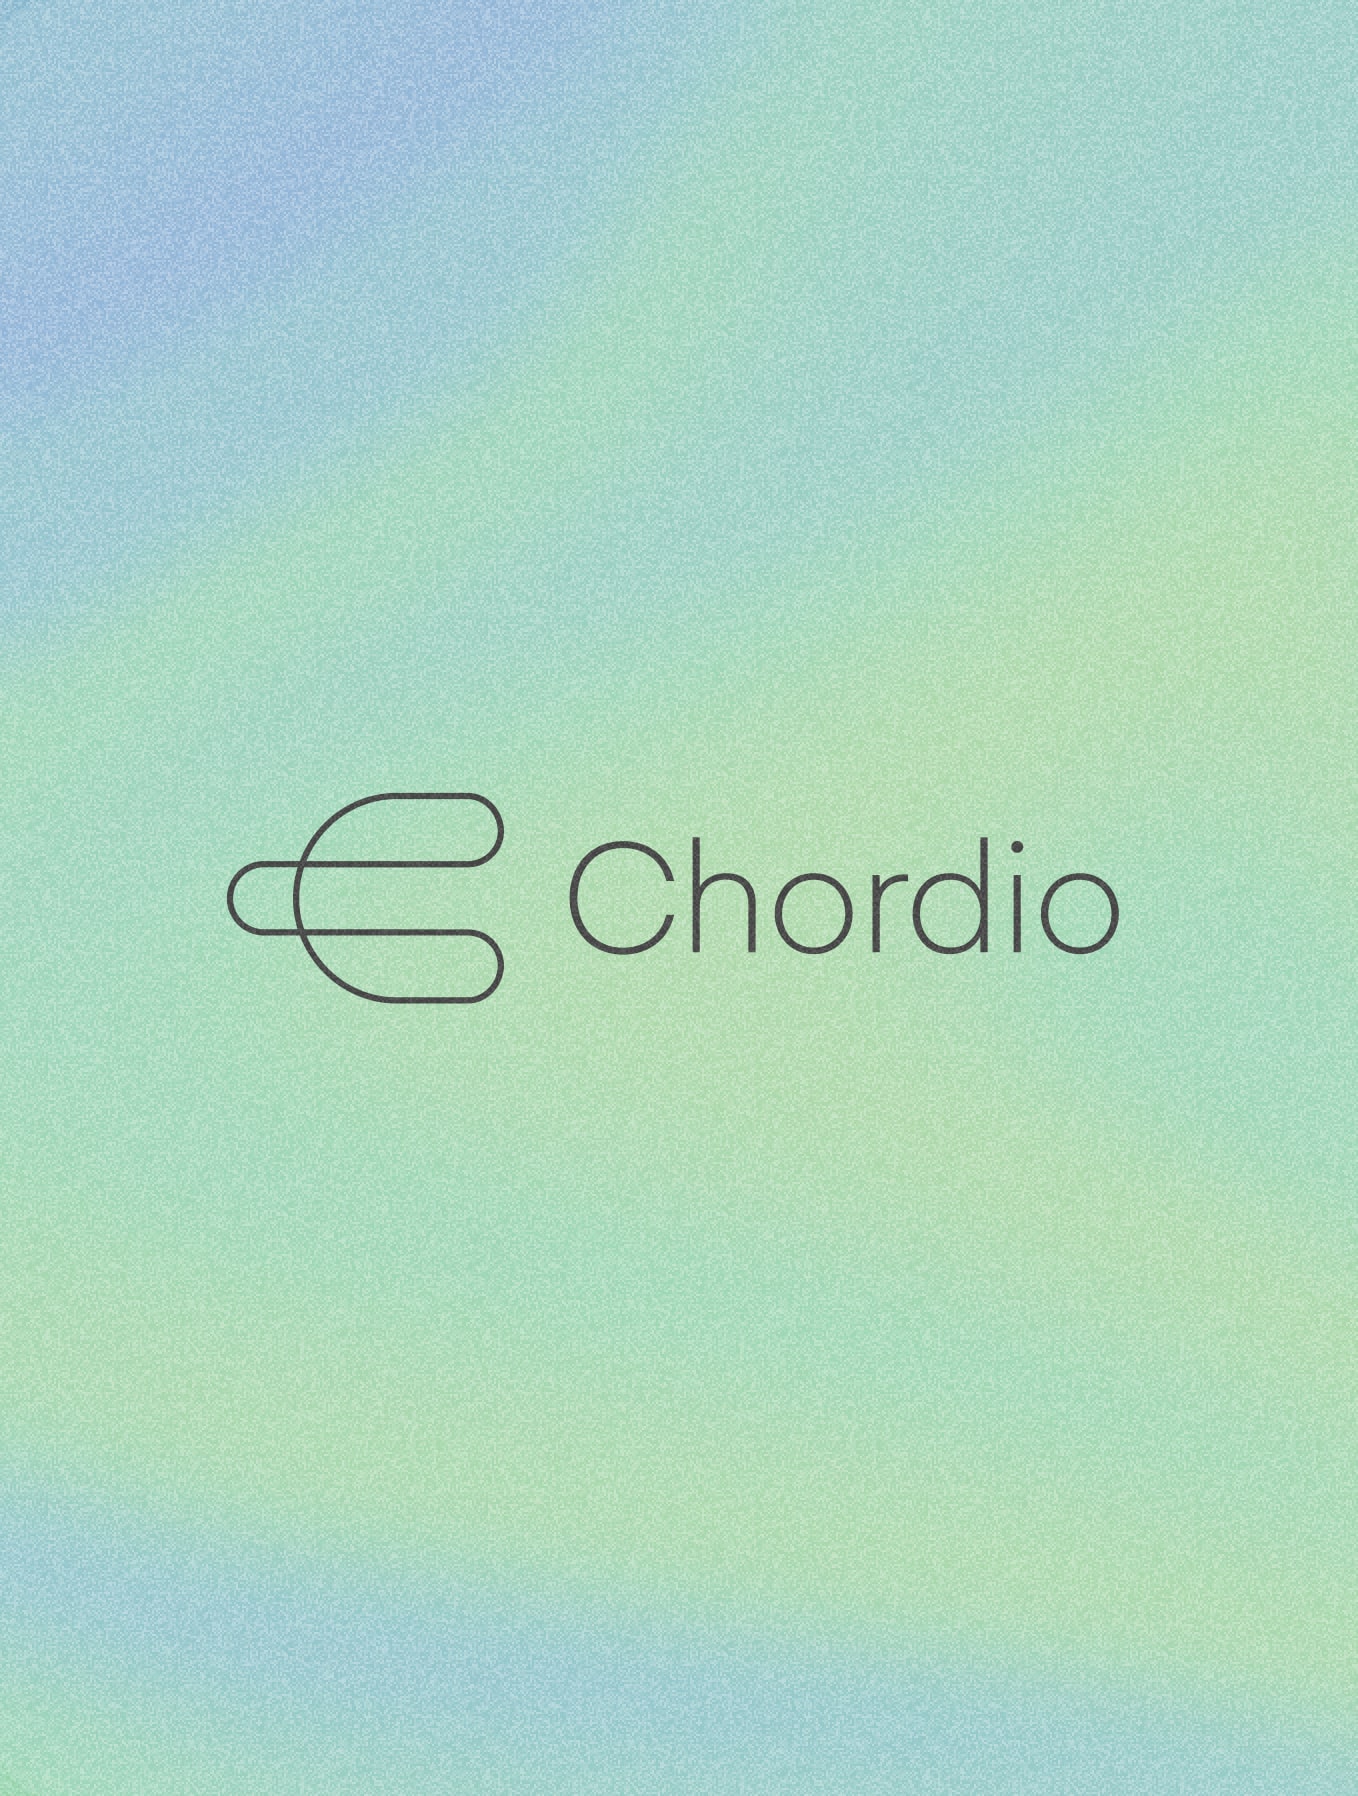 chordio